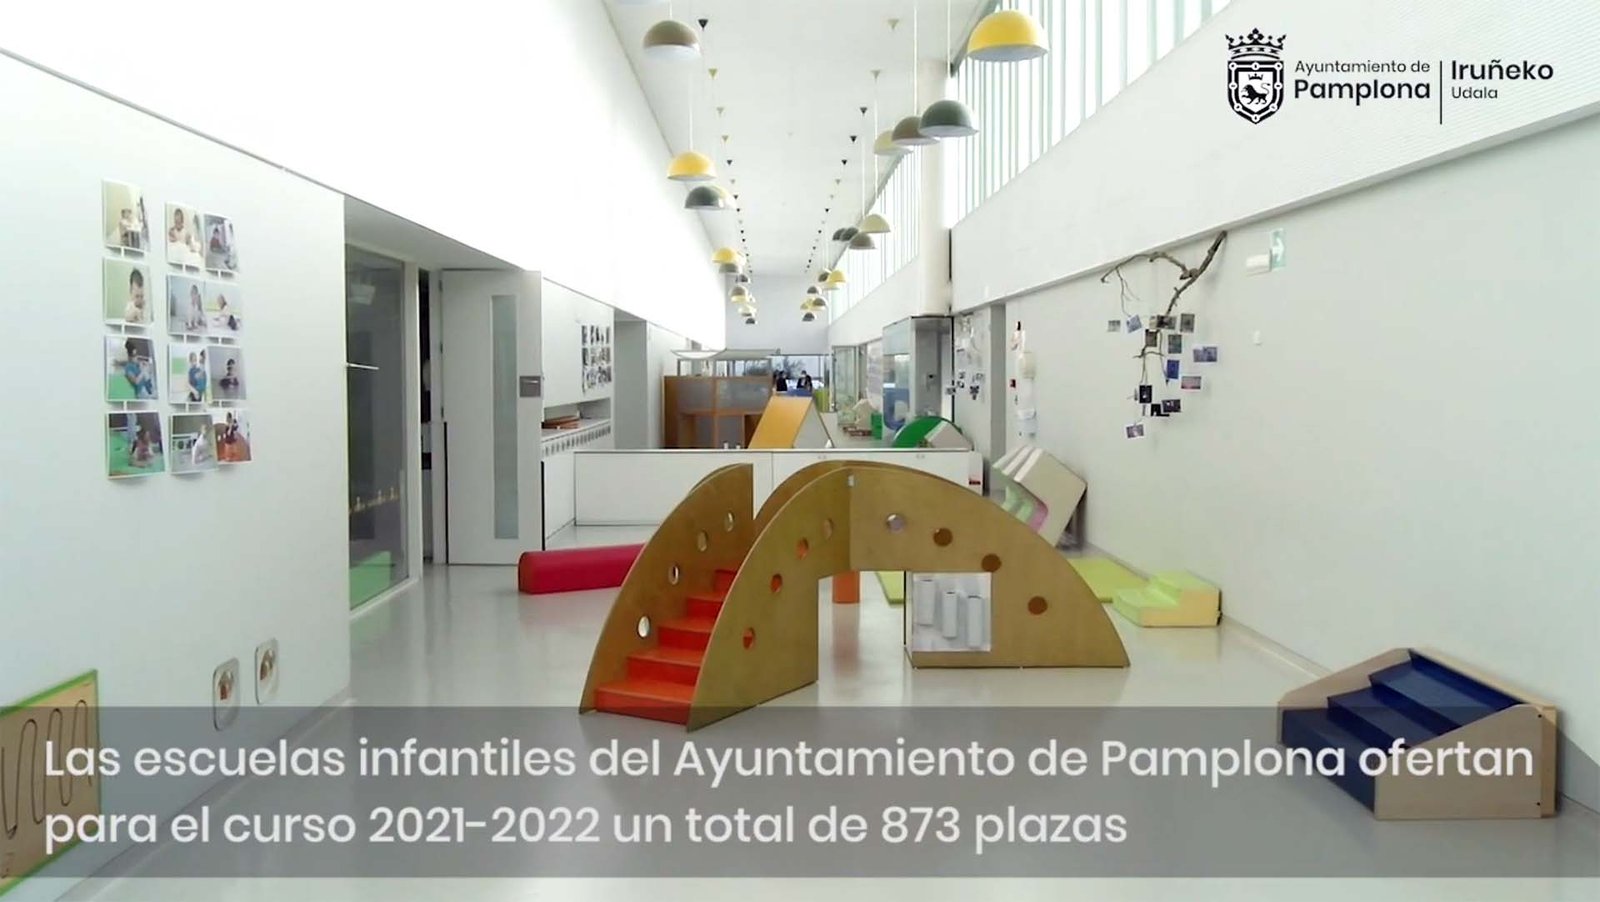 Las escuelas infantiles del Ayuntamiento de Pamplona ofertan para el curso 2021-2022 un total de 873 plazas de escolaridad gratuita y abren dos líneas de euskera con inglés